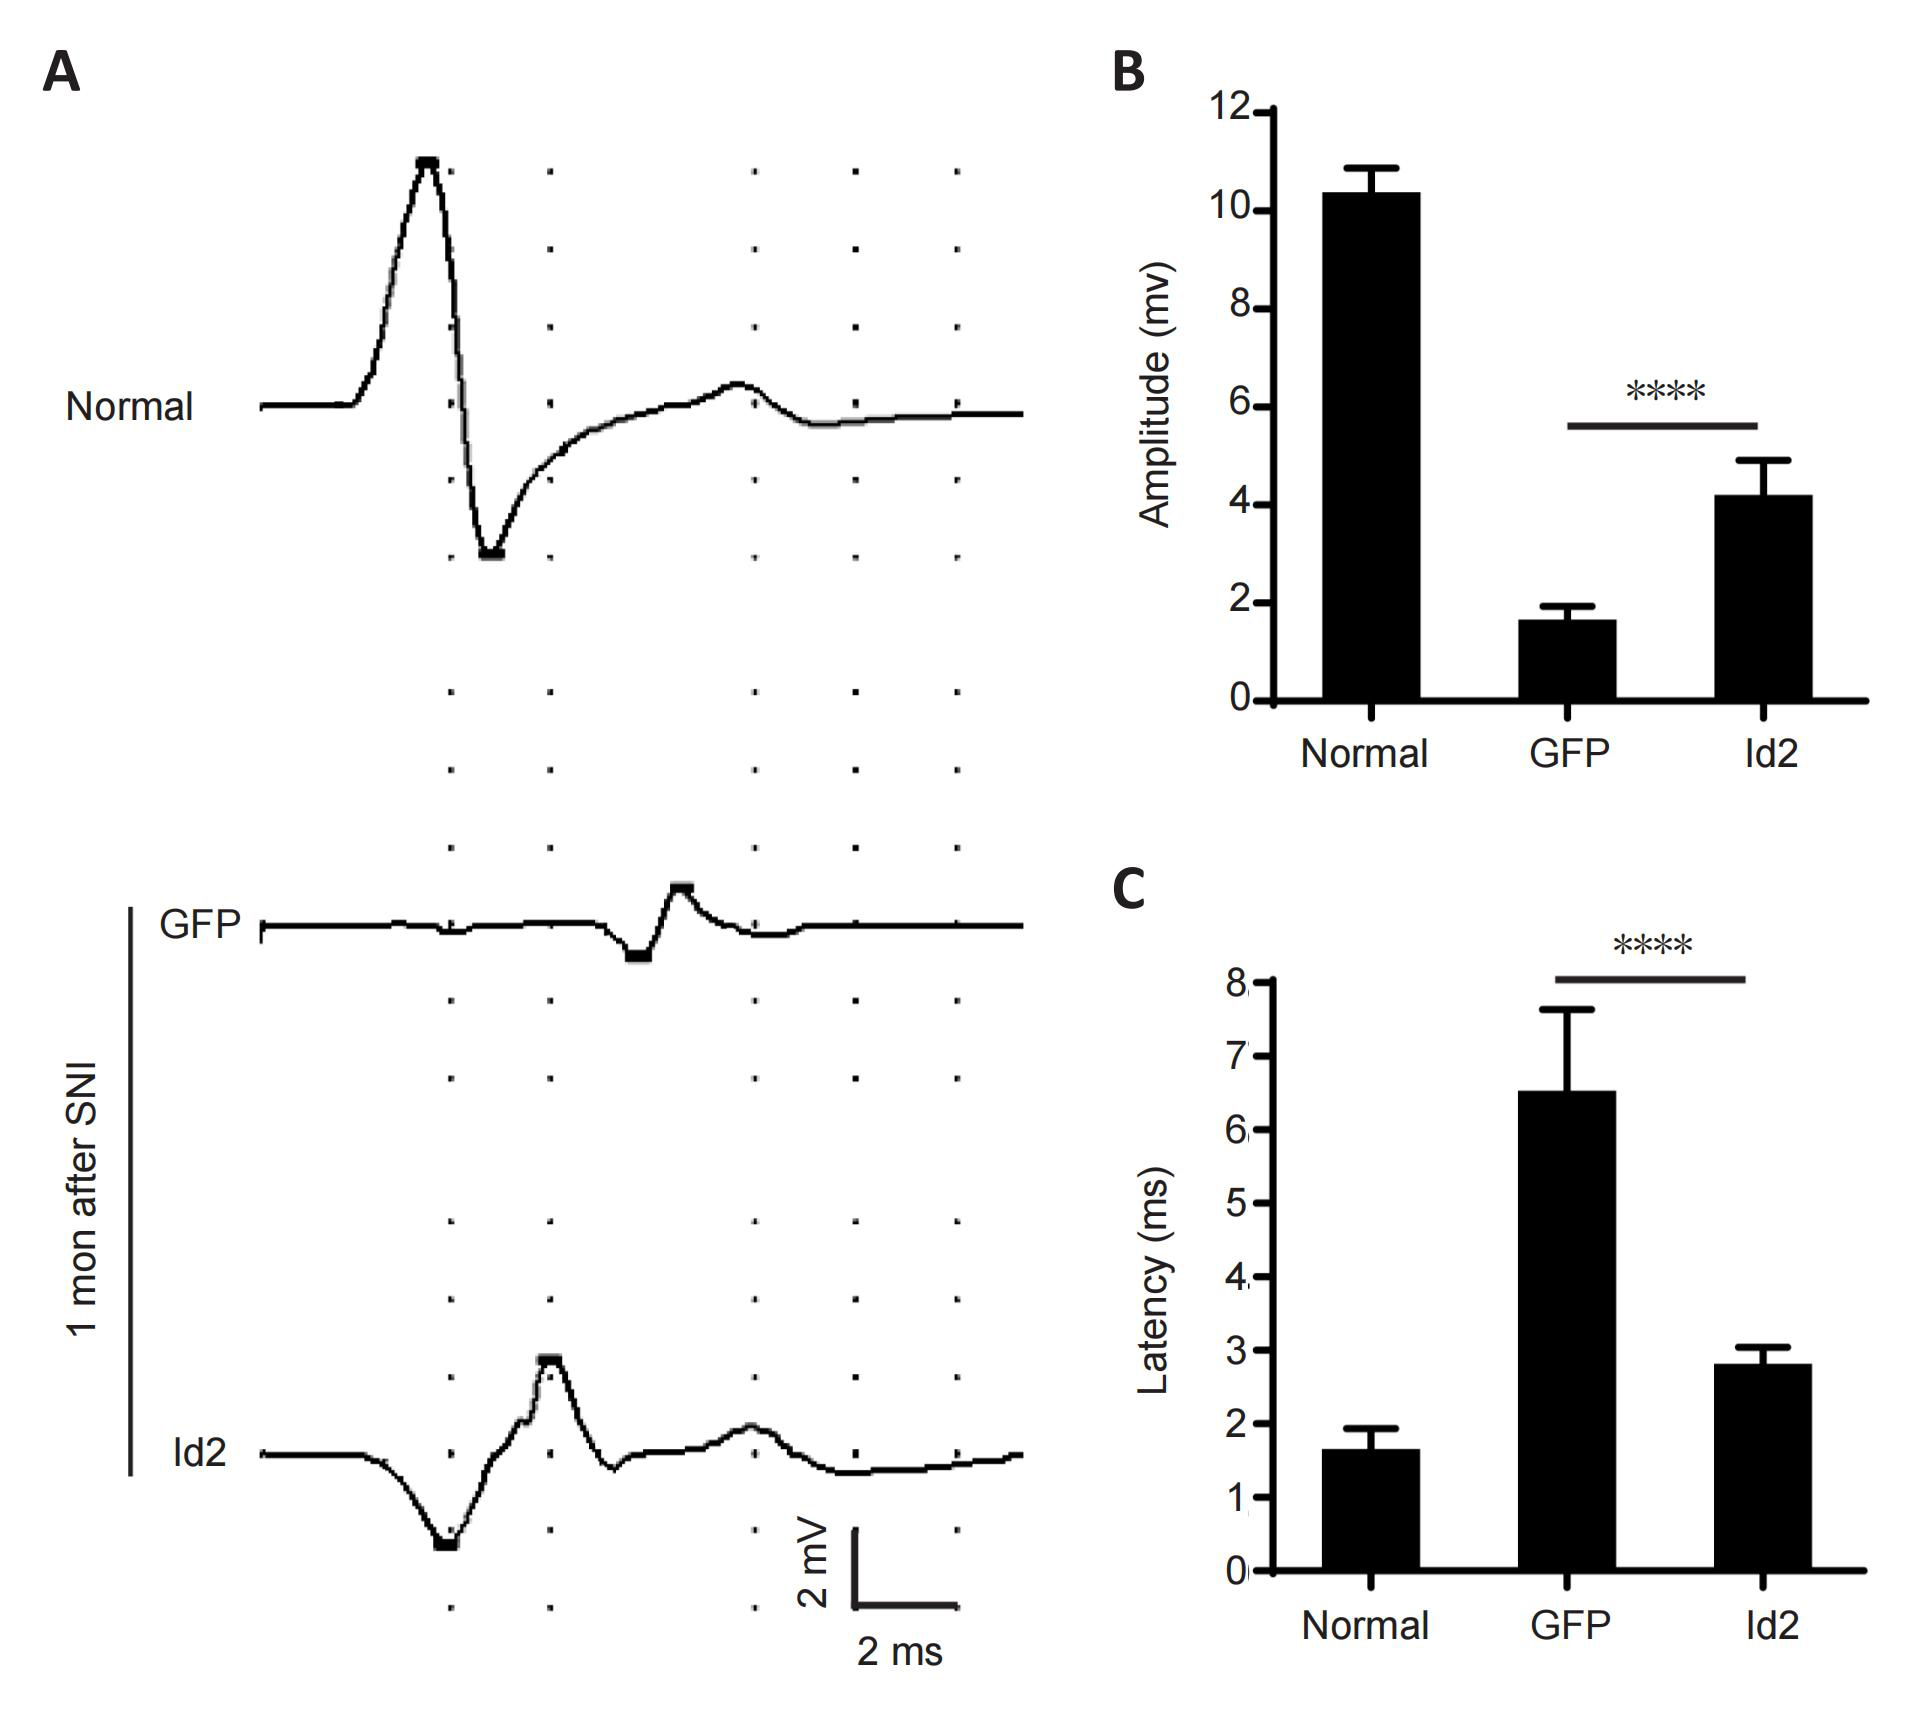  图7. Id2增强了SNI后神经传导和神经肌肉传递的恢复